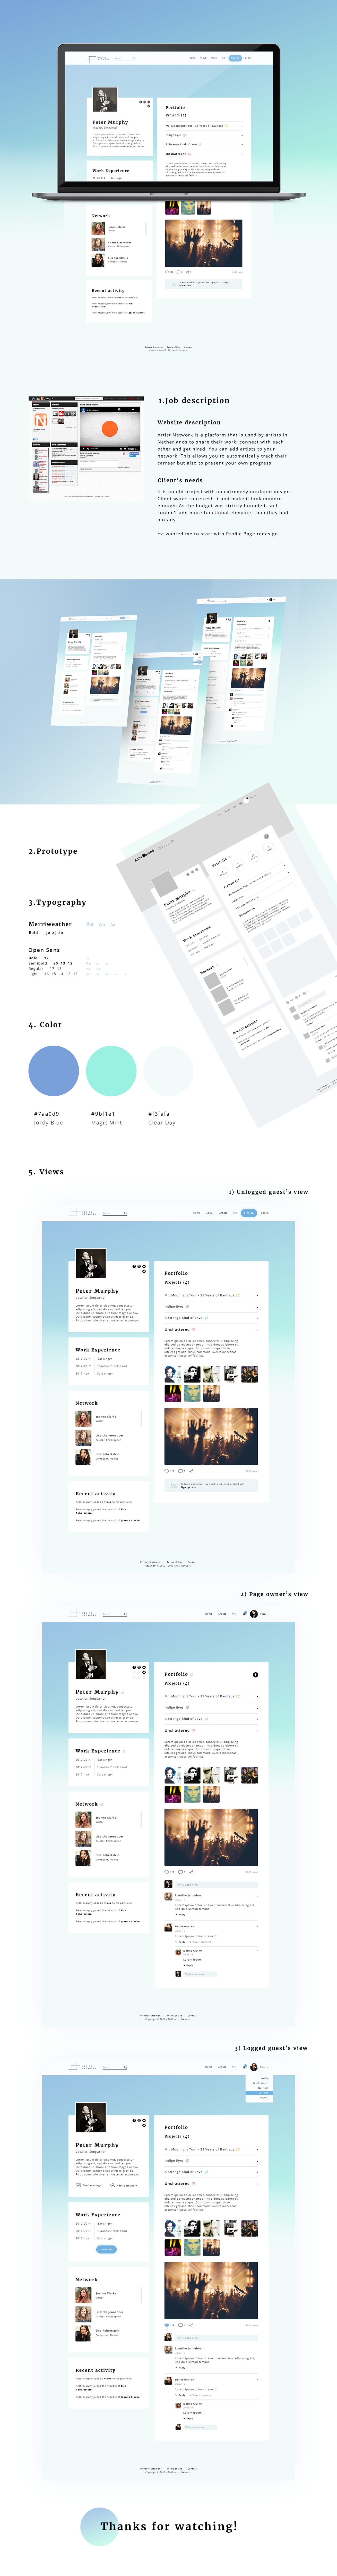 Profile Page screen design idea #27: Profile Page for Dutch Social Network